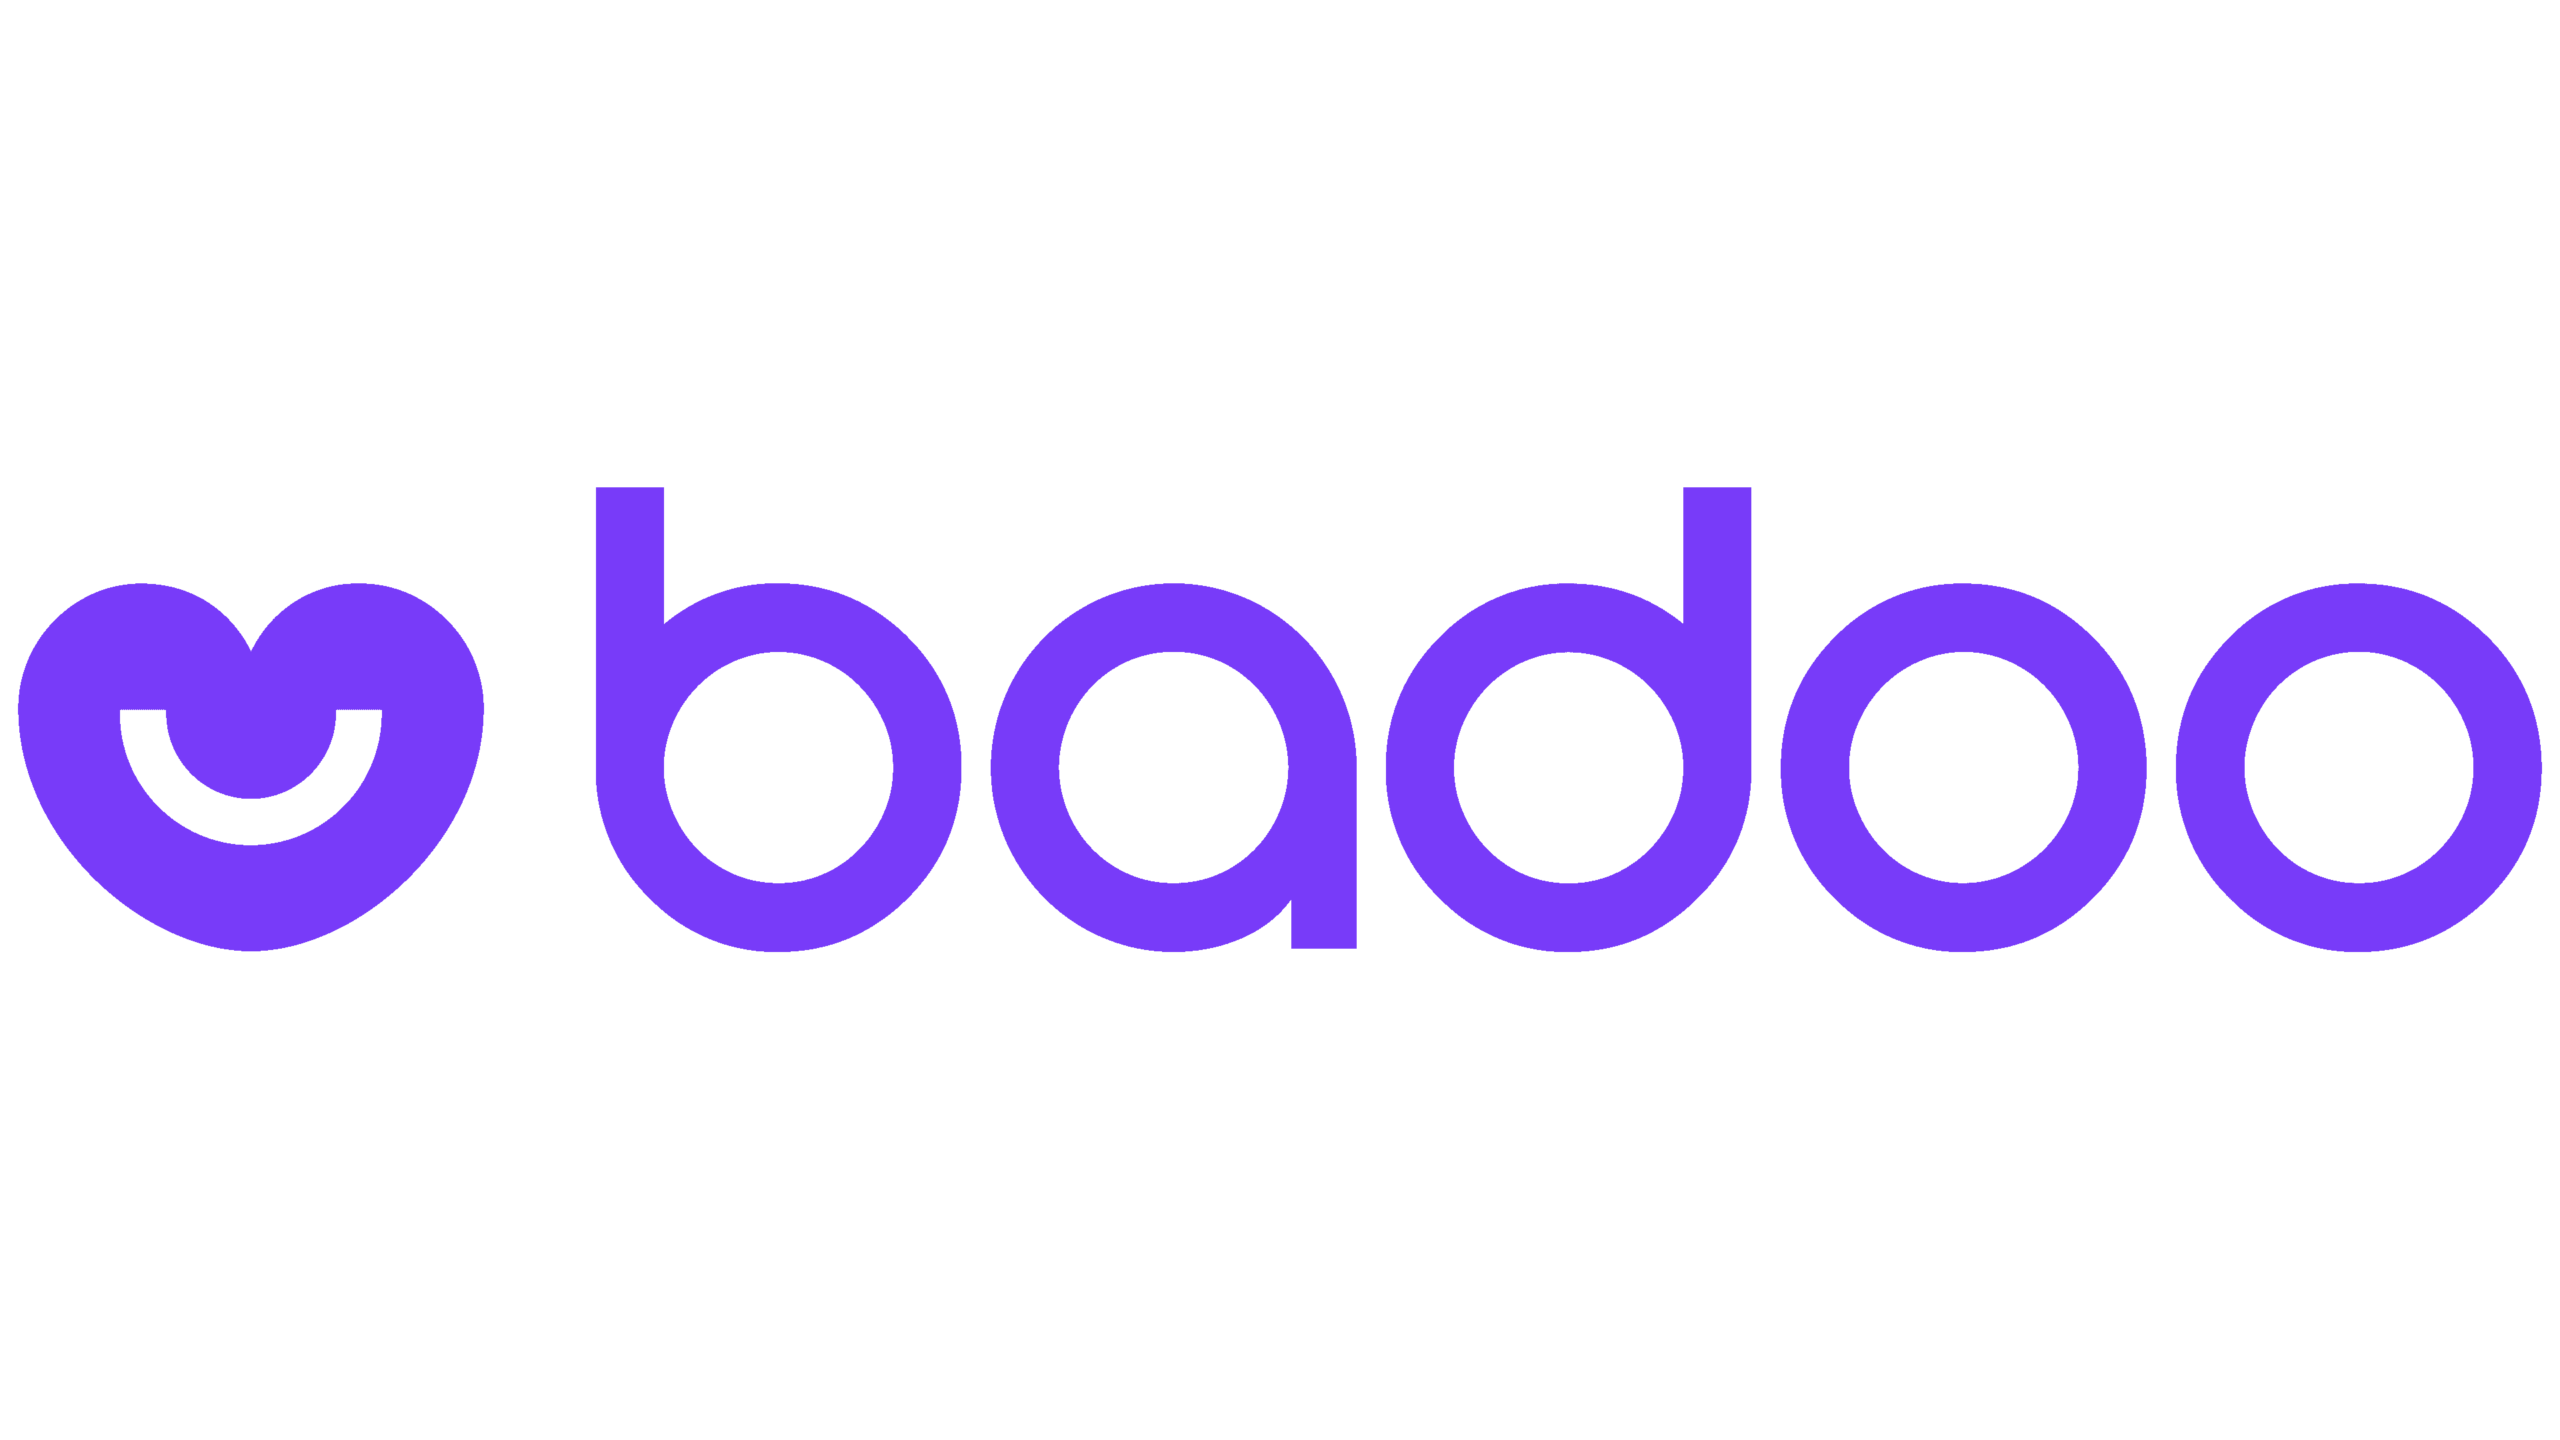 Logotipo do Badoo